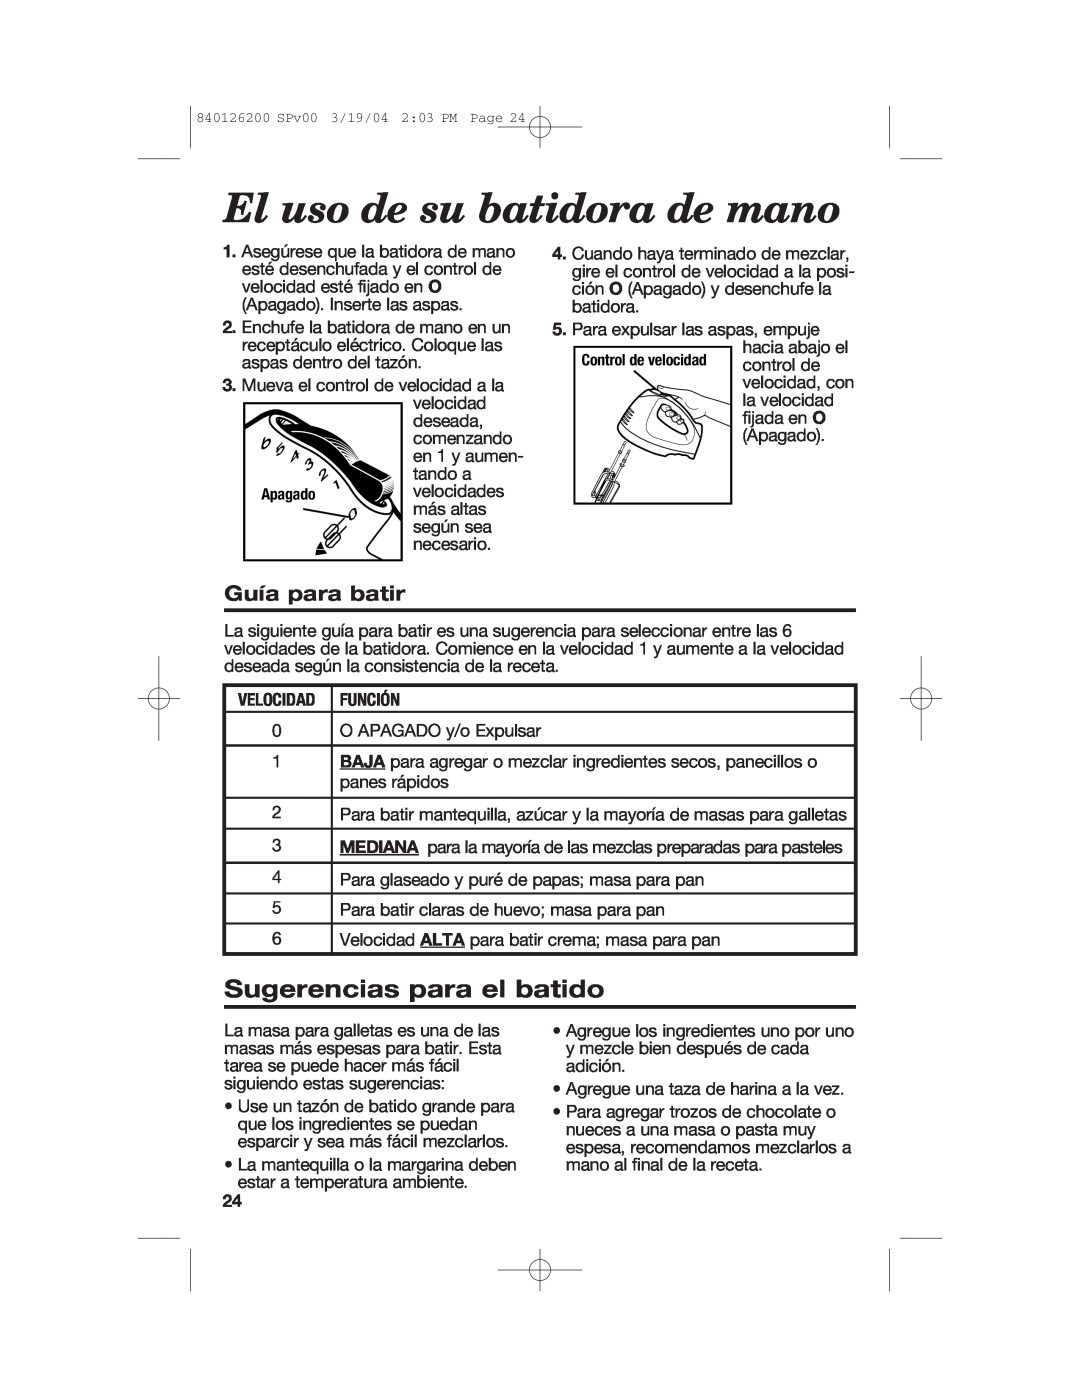 Hamilton Beach 62680C manual Sugerencias para el batido, Guía para batir, Velocidad Función, El uso de su batidora de mano 